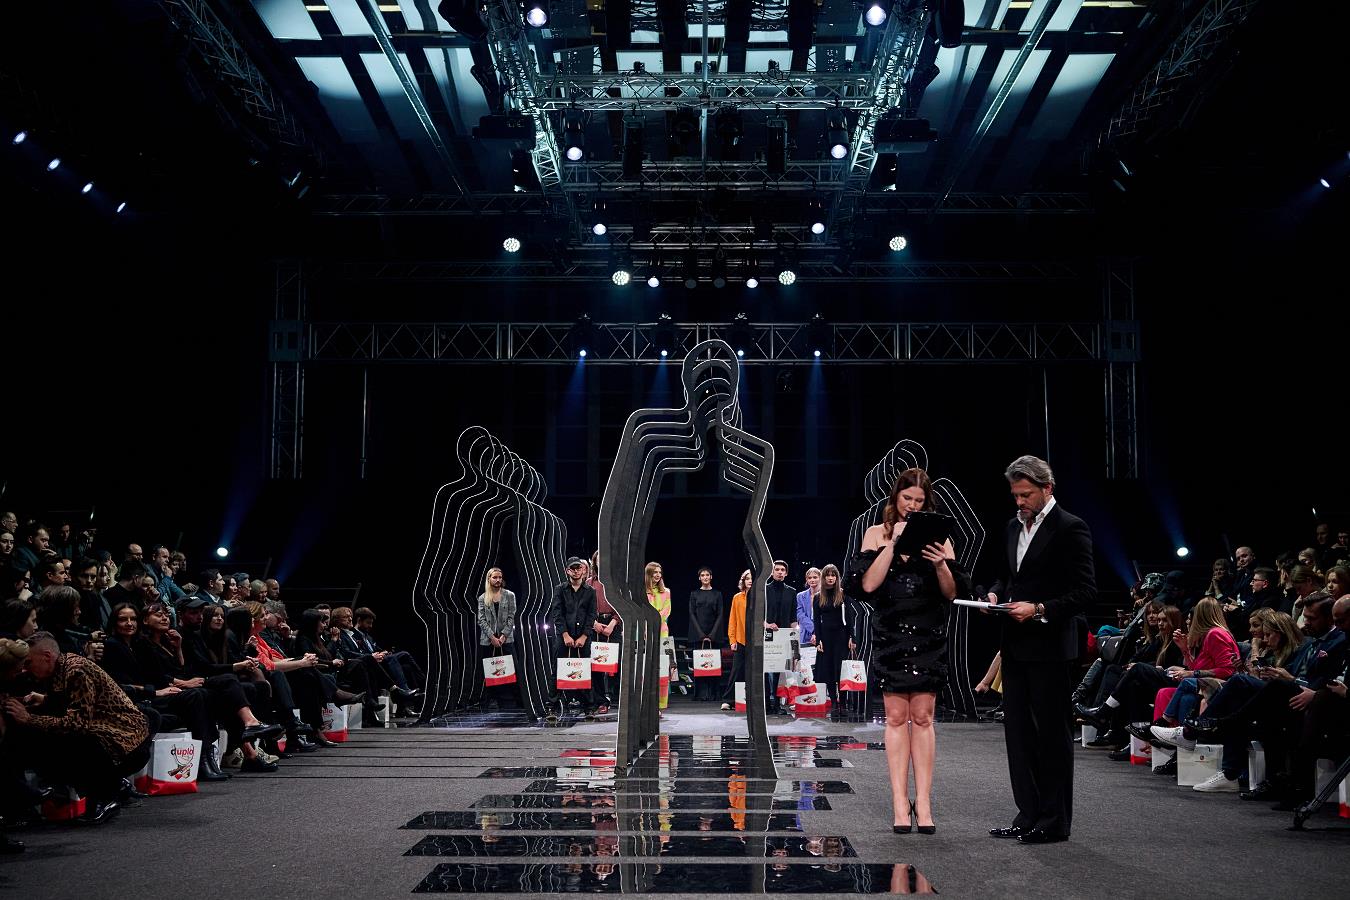 Łódź Young Fashion prezentuje nowe szanse dla polskiej mody. Z Magdaleną Christofi, producentką wydarzenia, rozmawiamy o wszystkich obliczach kreatywności